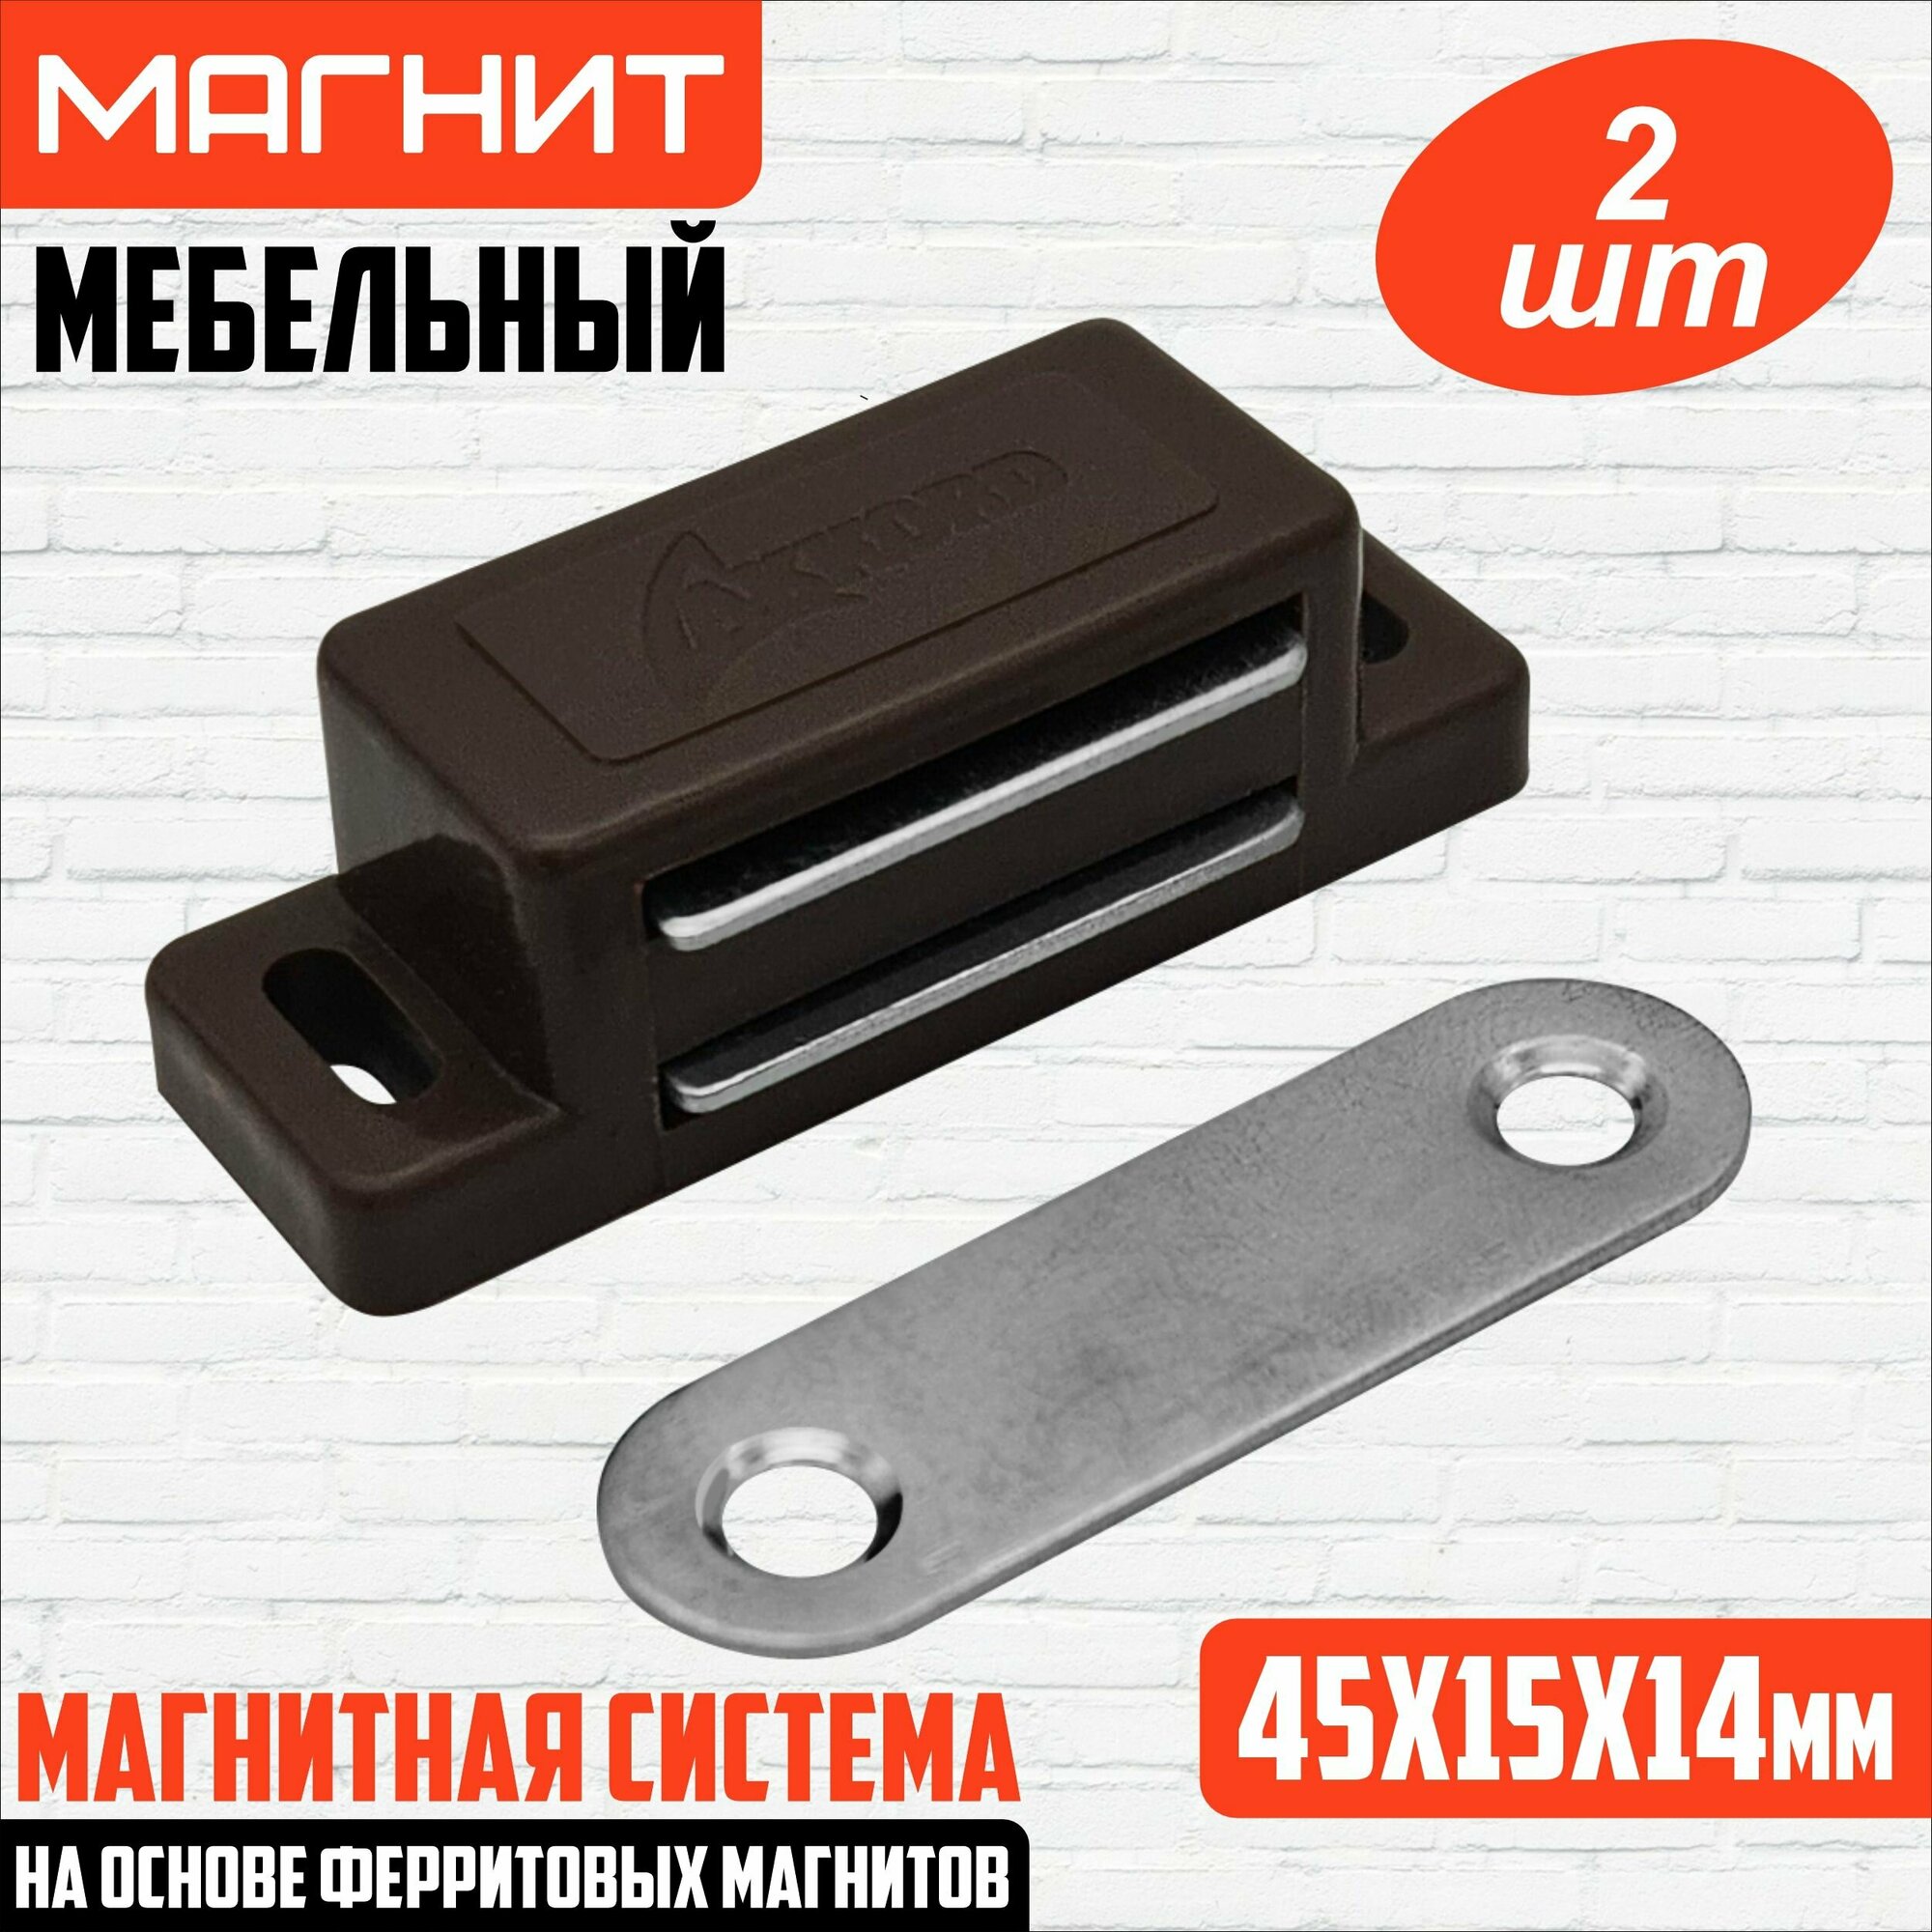 Магнит мебельный 455 мм 2 штуки коричневый/ защелка магнитная мебельная накладная